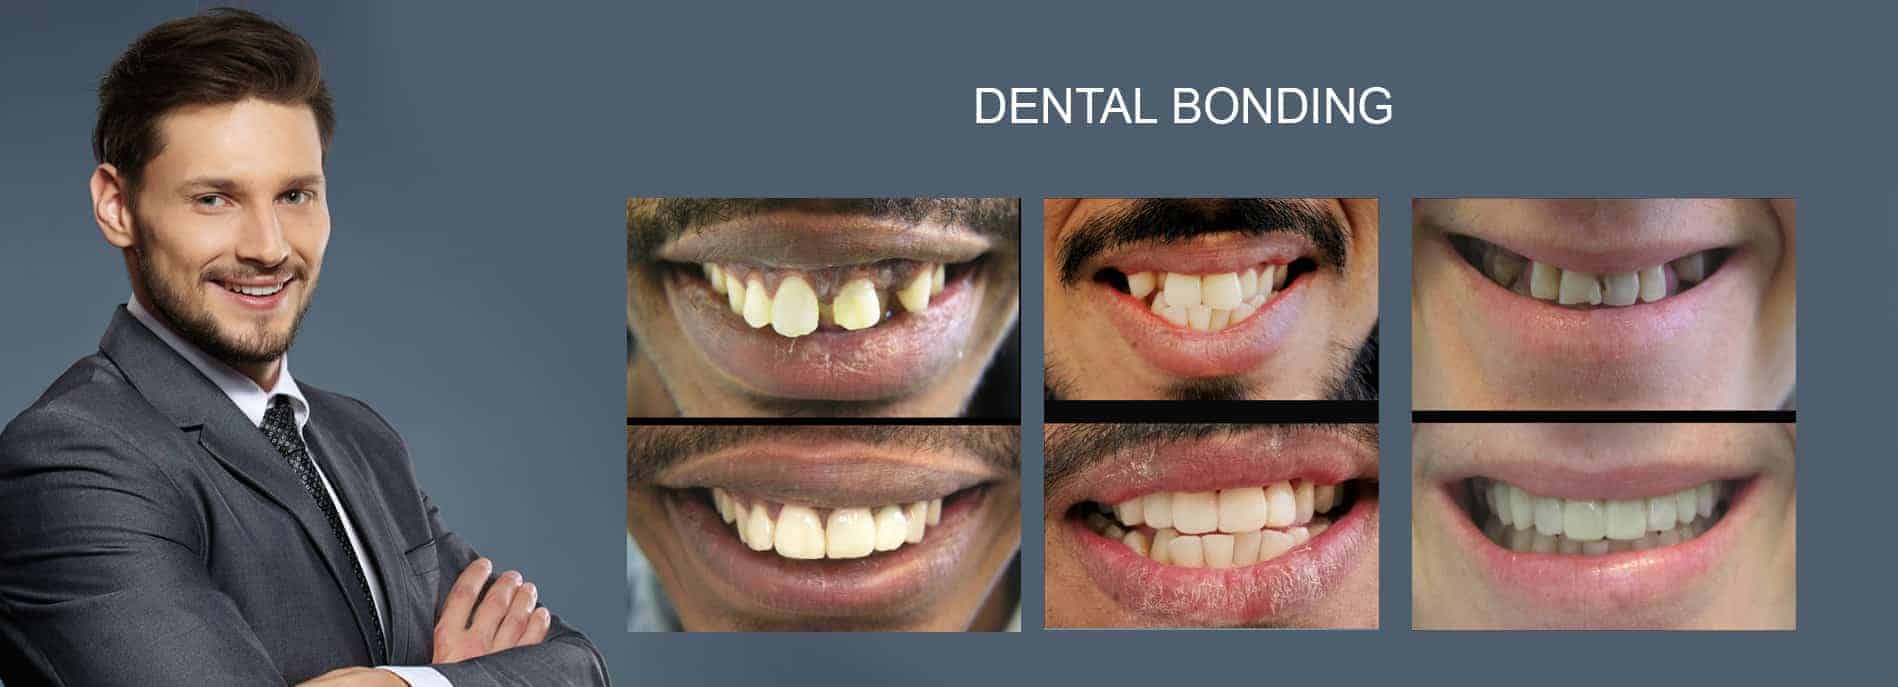 DENTAL-BONDING-Cosmetic-Dentist-Melbourne.jpg